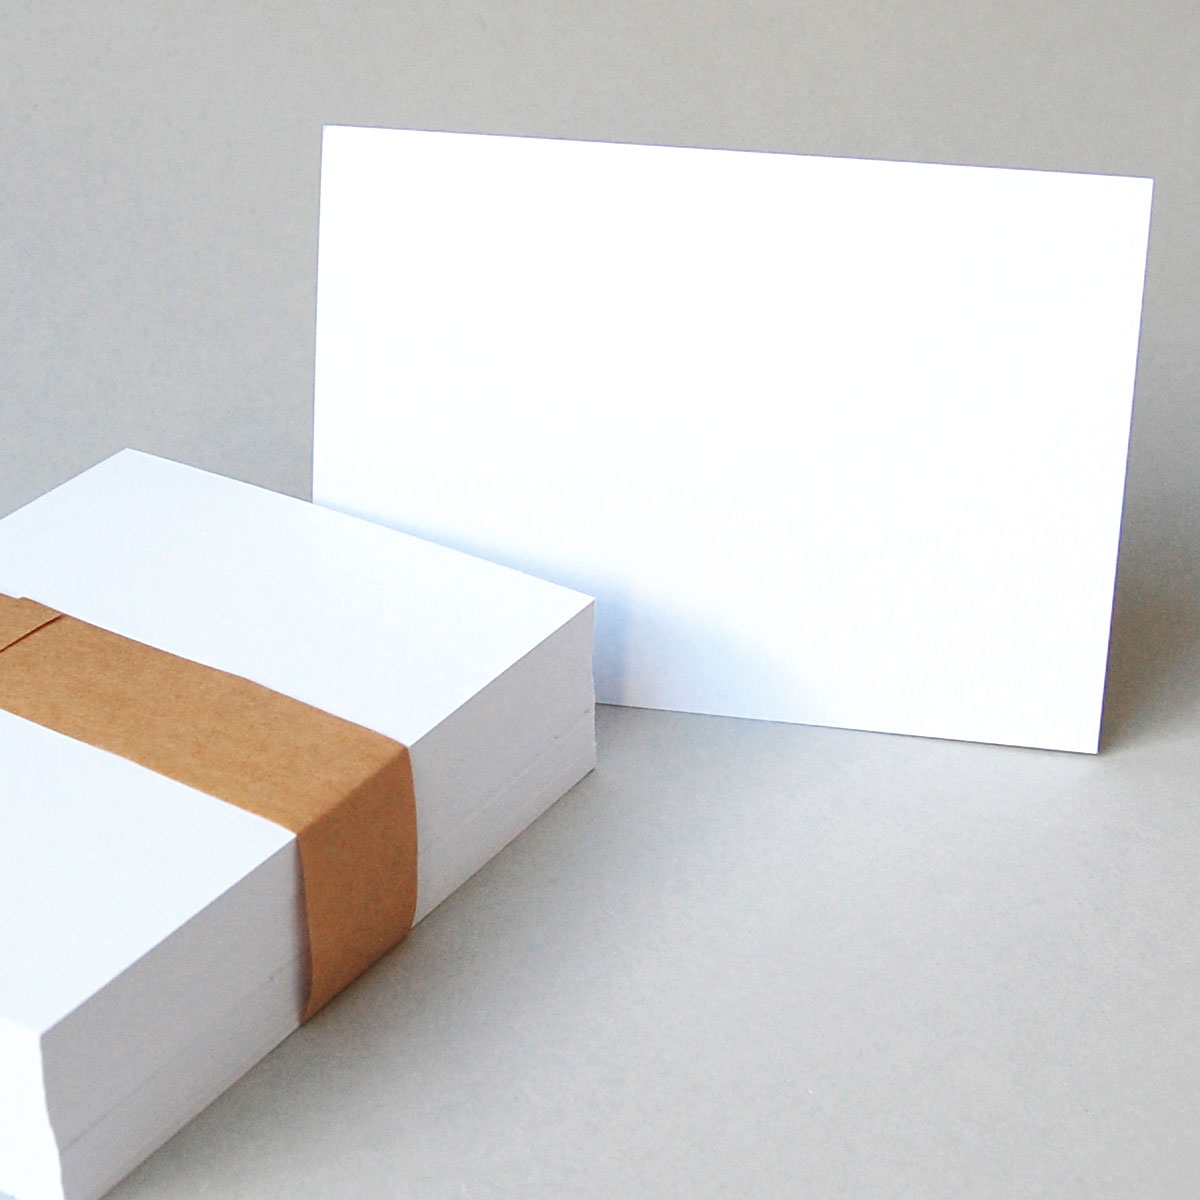 Blankopostkarten DIN A6 aus weißem Karton